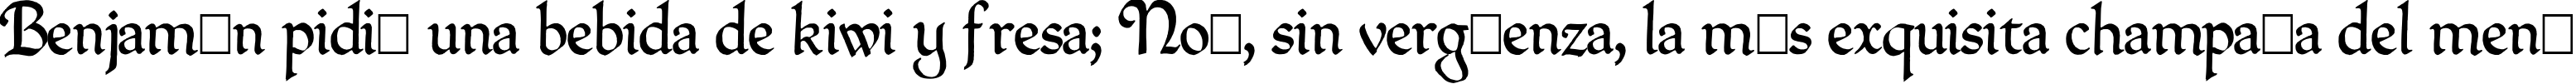 Пример написания шрифтом QuillPerpendicularRegular текста на испанском